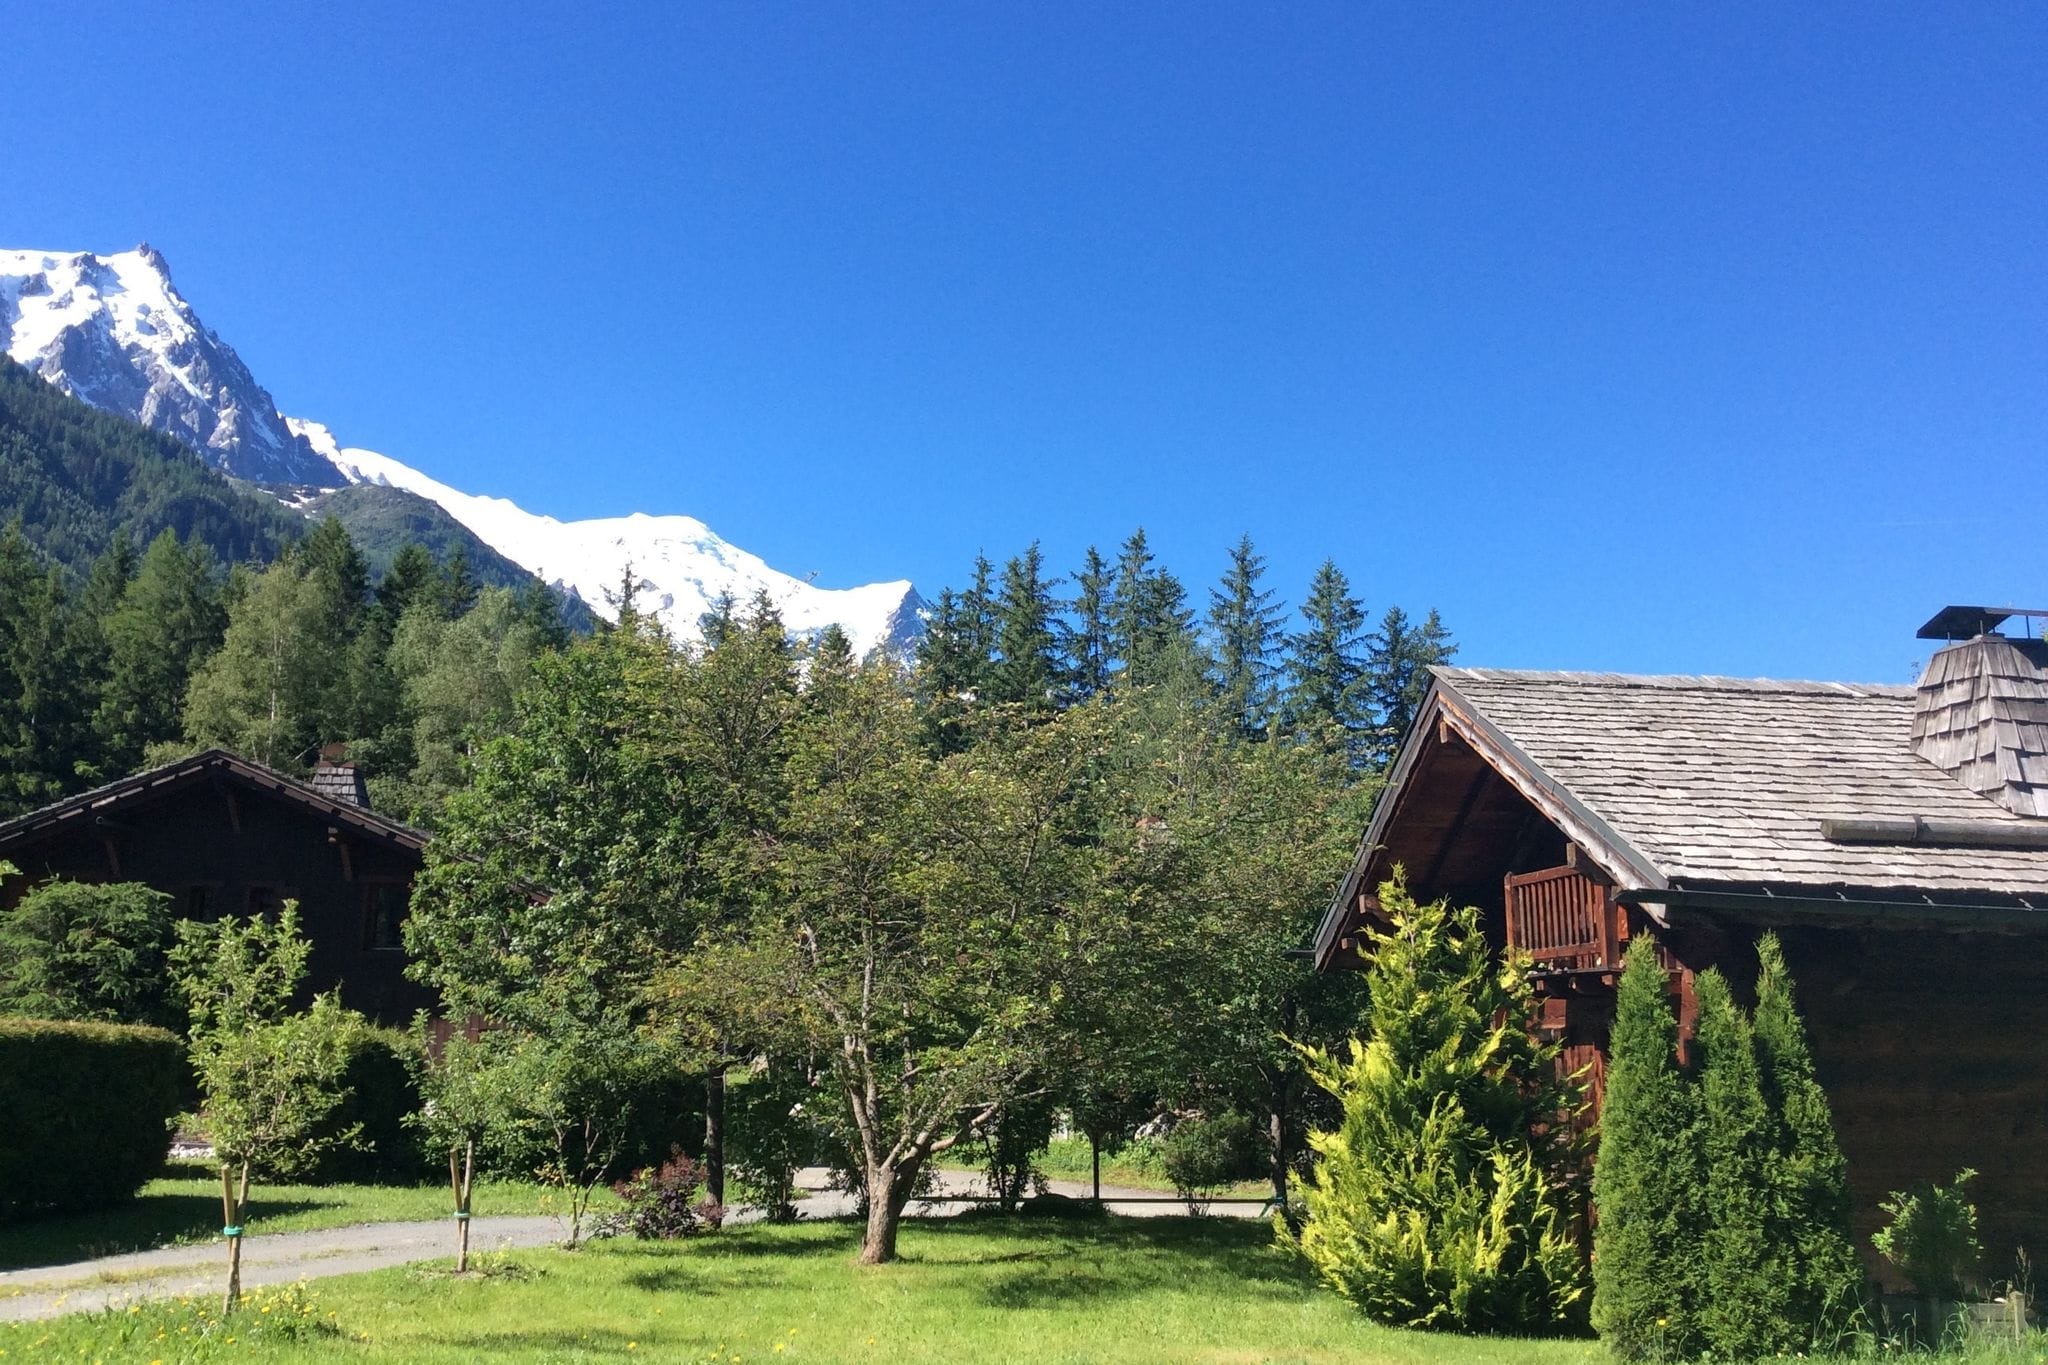 Schilderachtig Frans chalet in Chamonix nabij de vallei